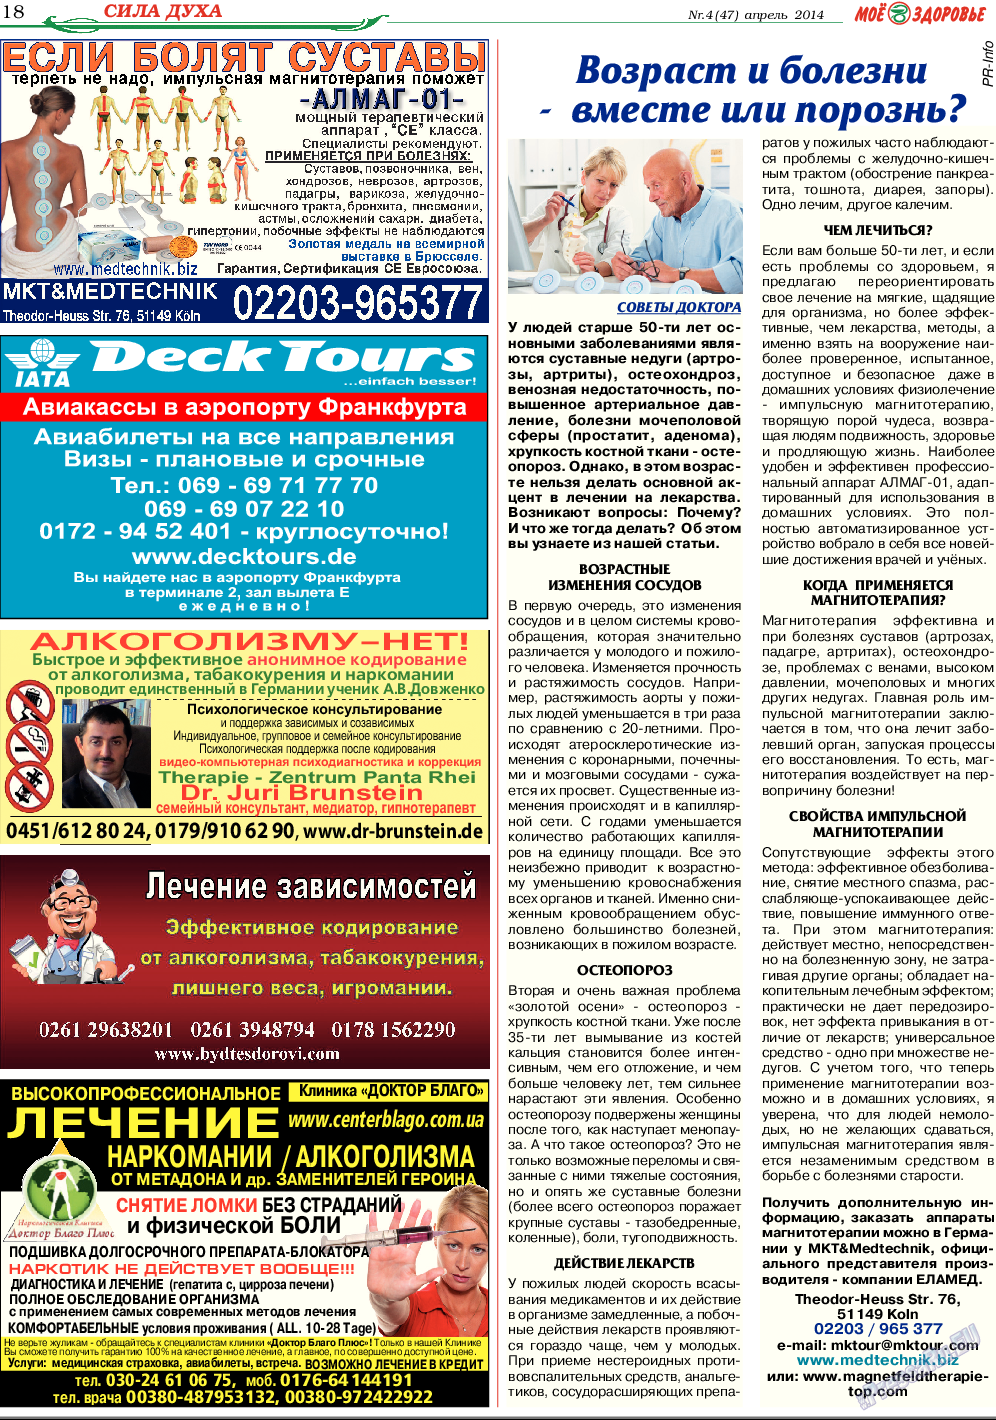 Кругозор (газета). 2014 год, номер 4, стр. 18